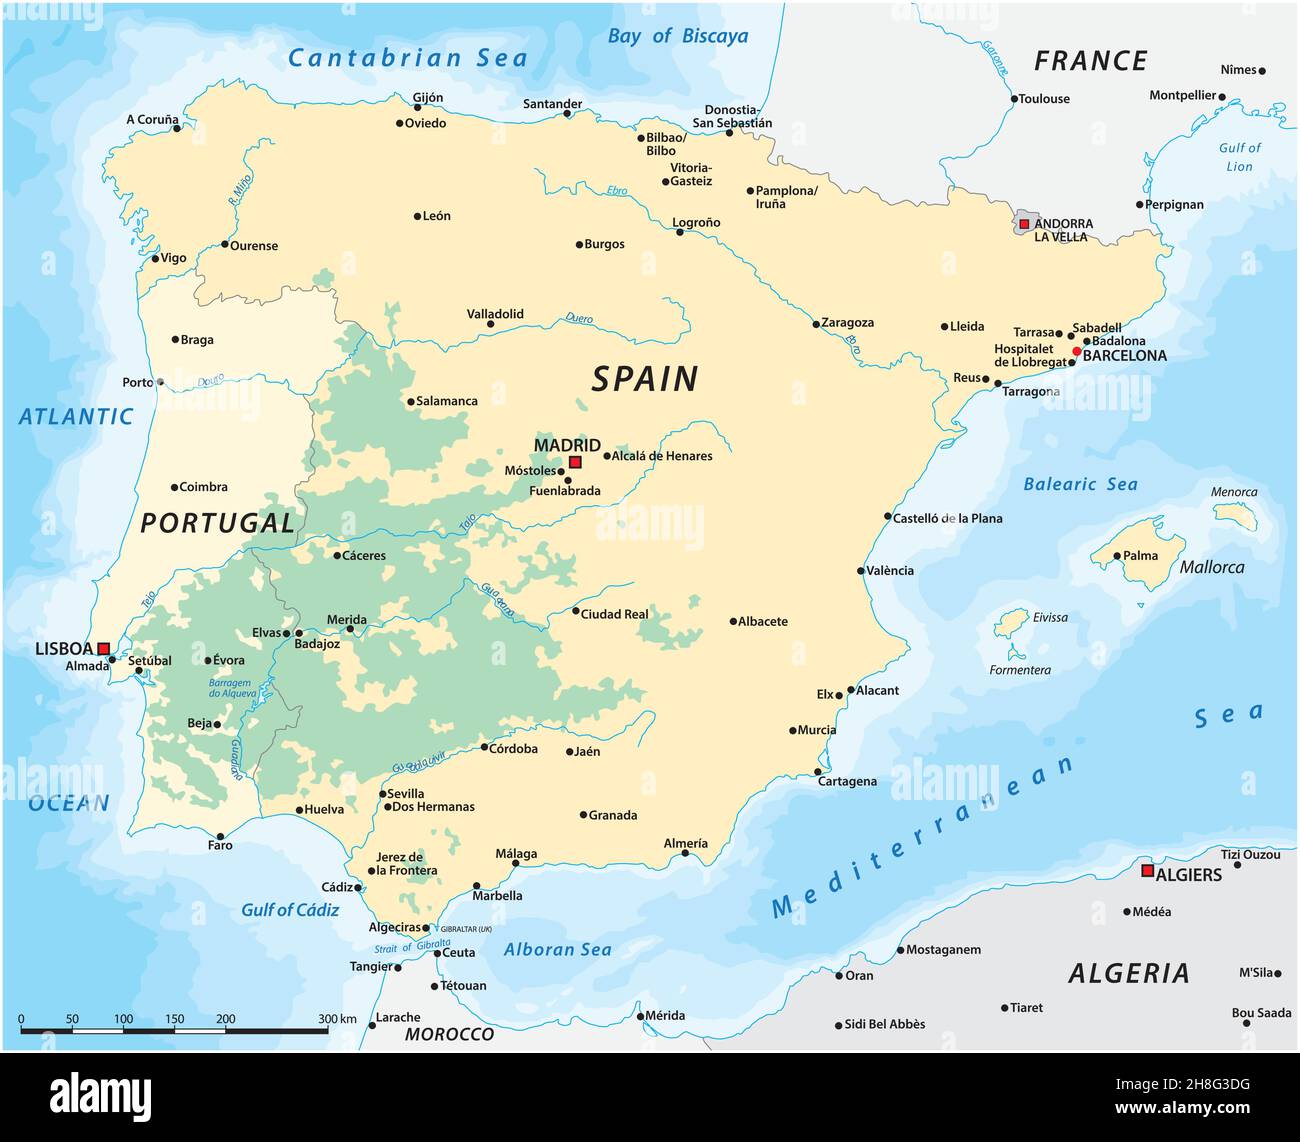 Mappa del Dehesa, Montado, paesaggio culturale della Spagna meridionale e centrale e del Portogallo meridionale Illustrazione Vettoriale